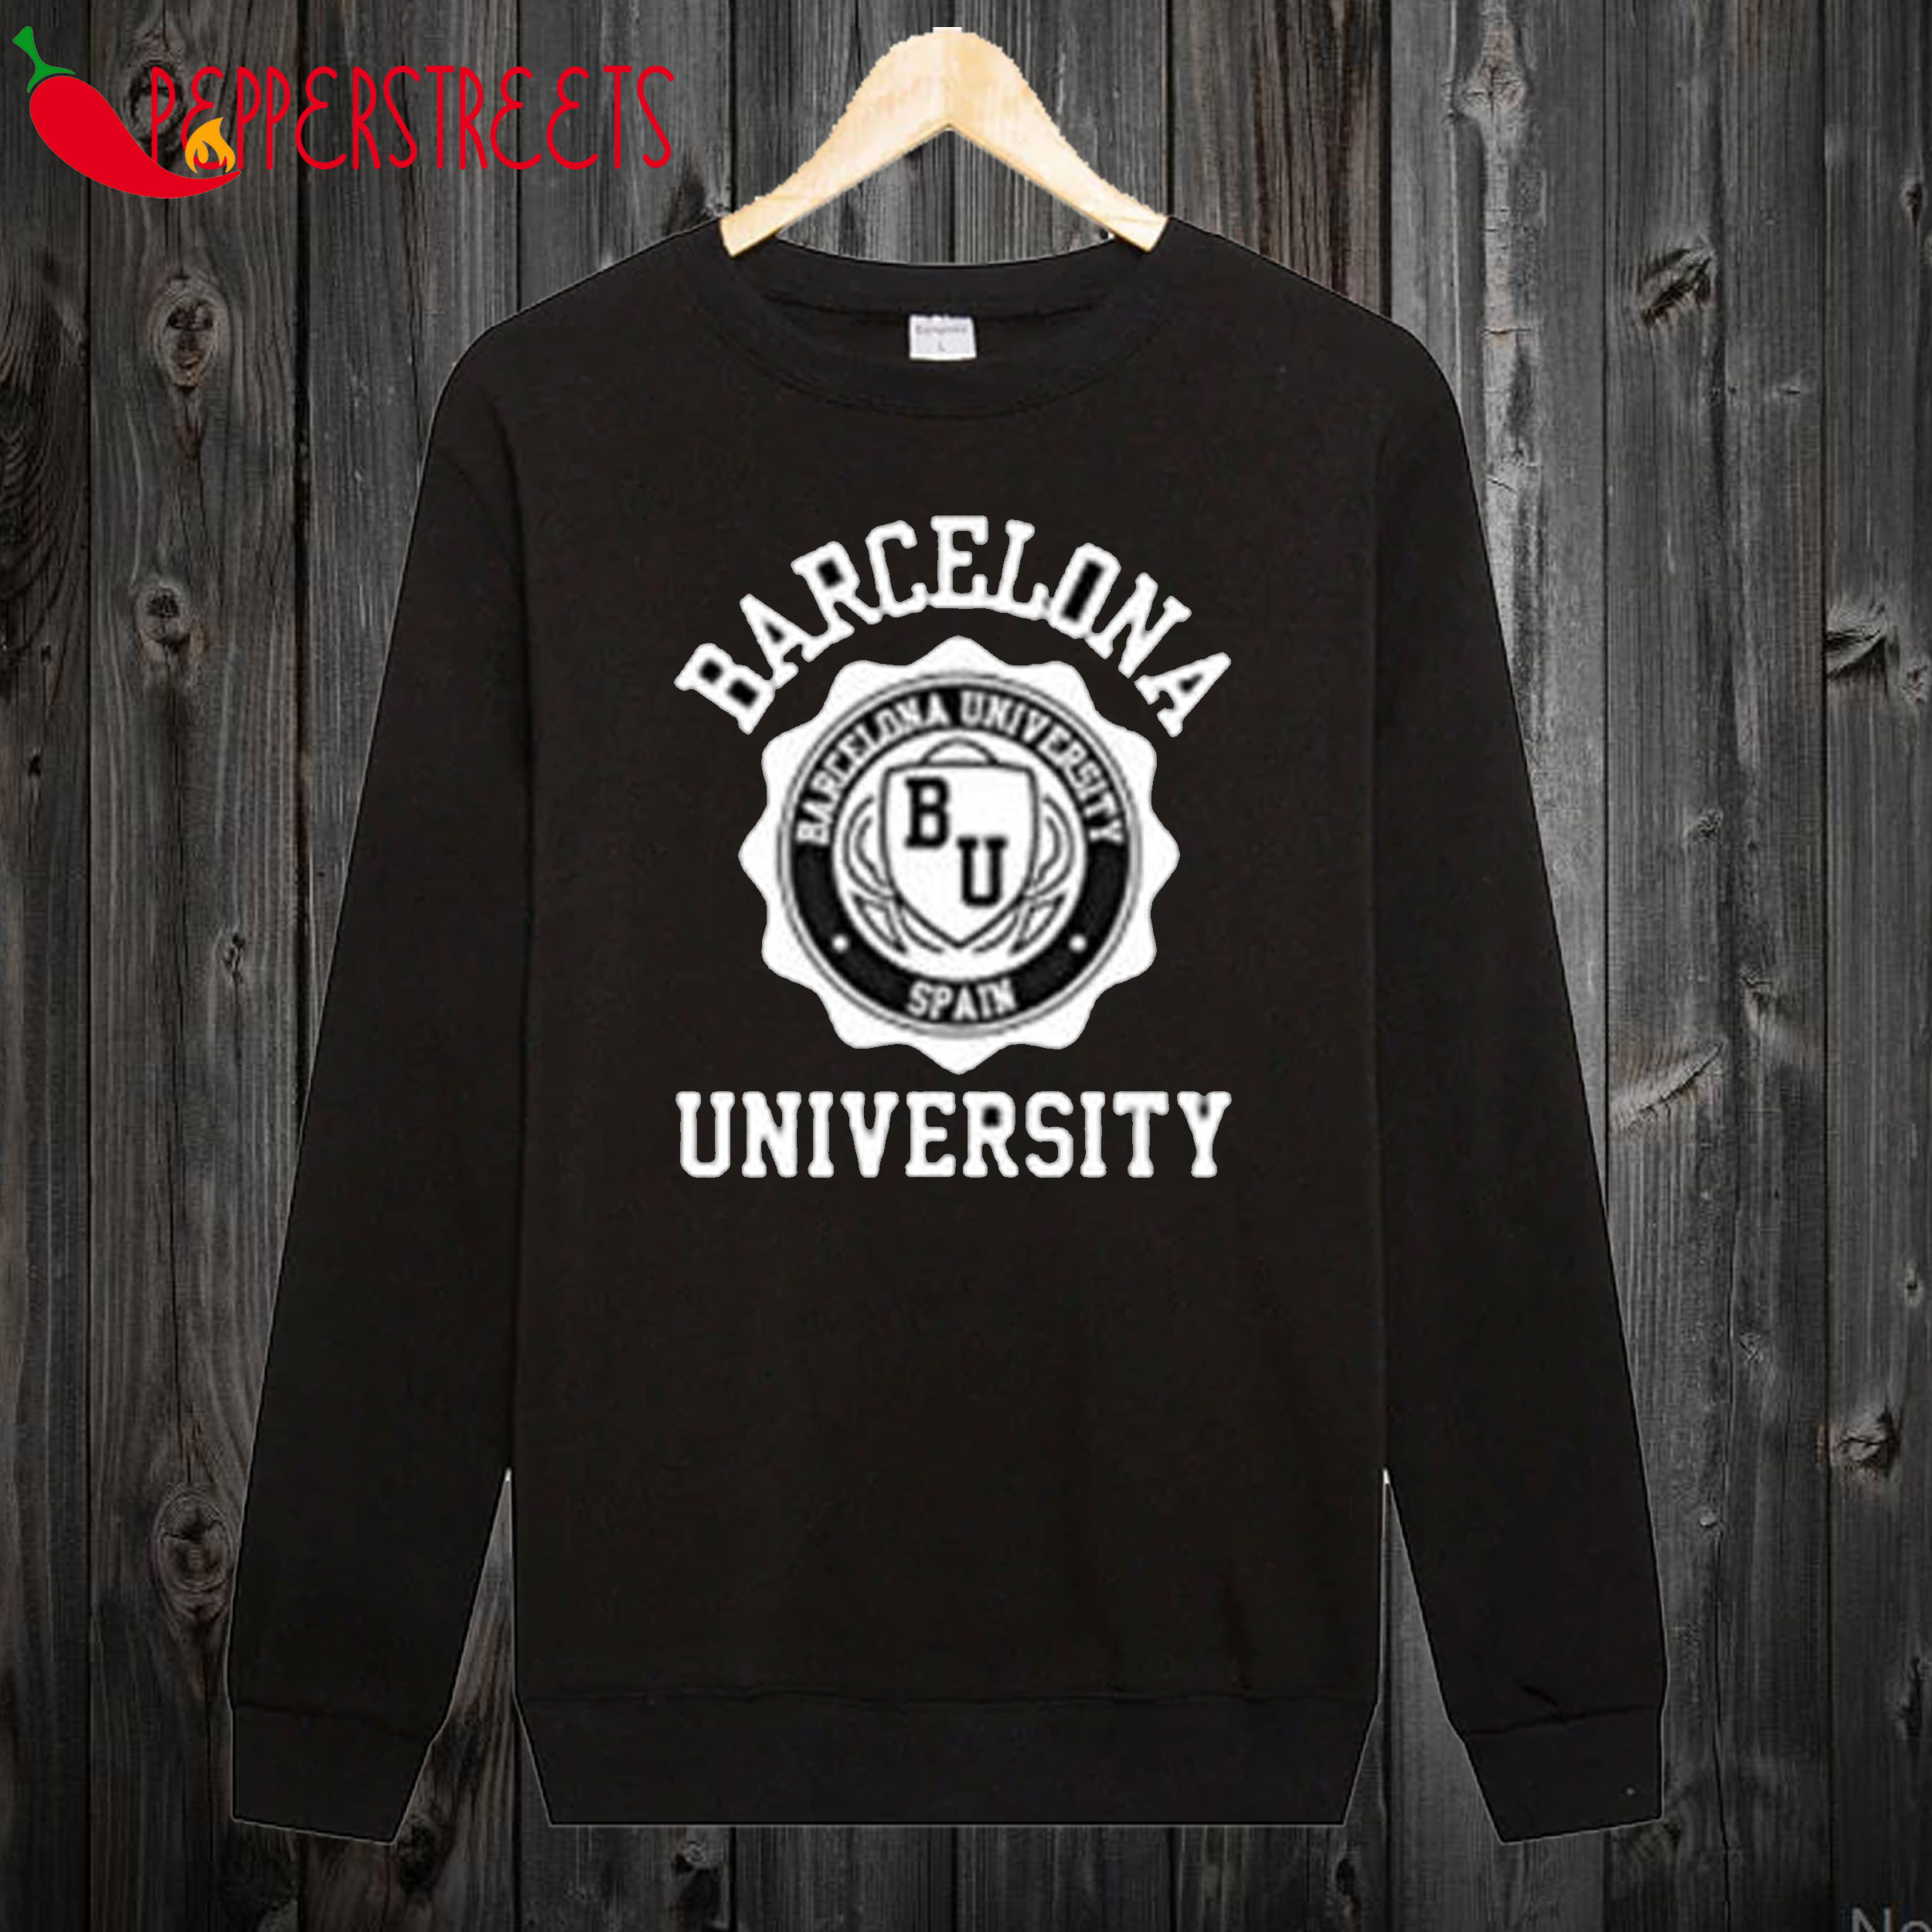 Barcelona University Sweatshirt